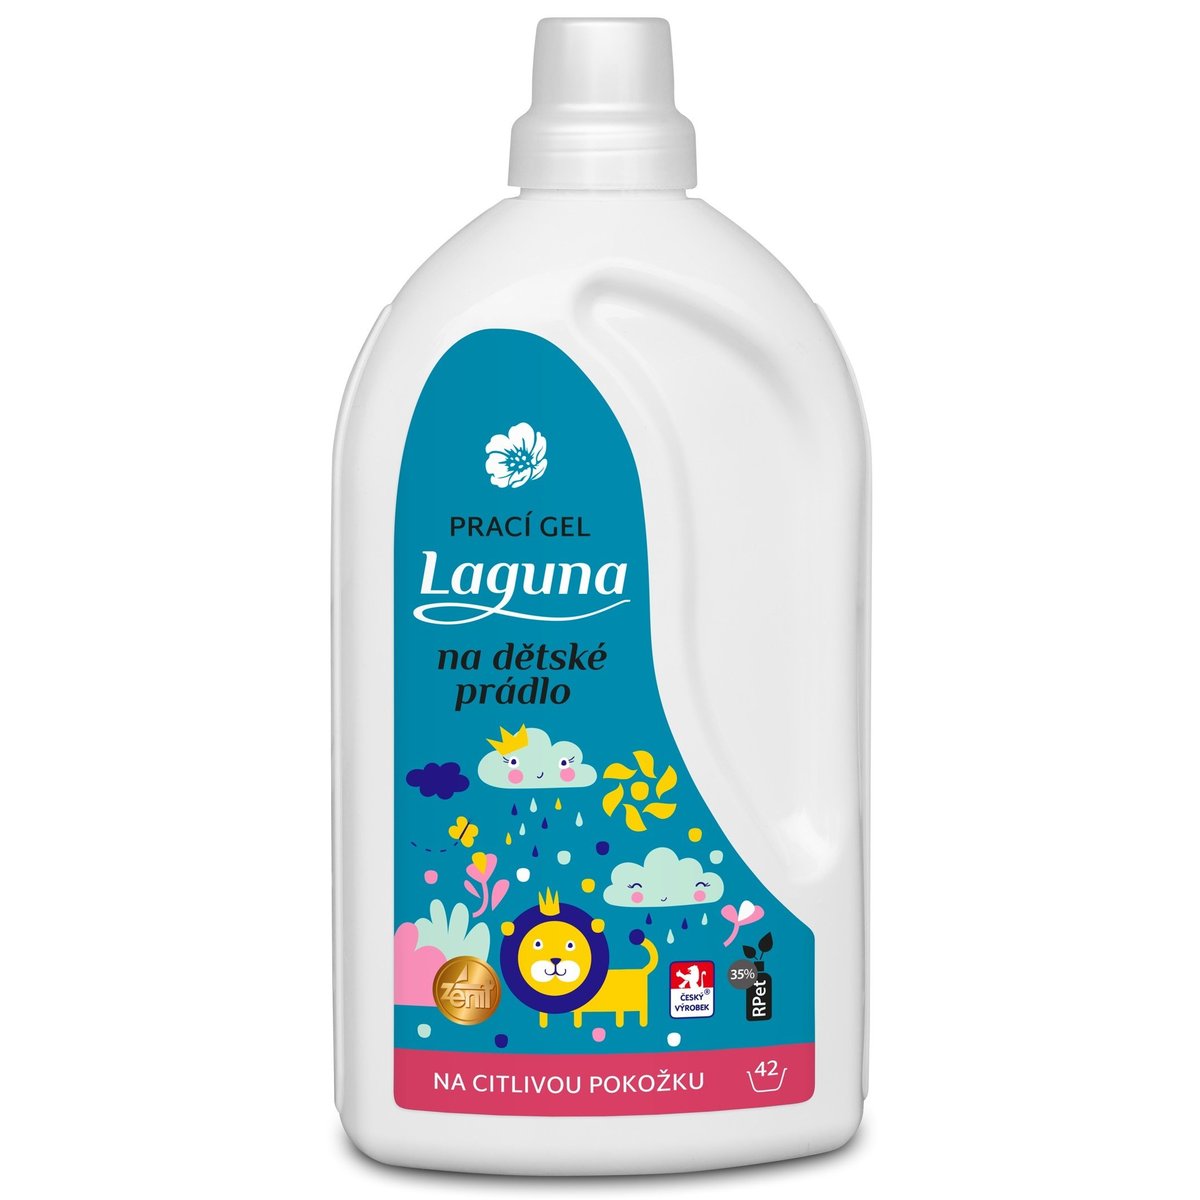 Laguna Prací gel na dětské prádlo (1,5 l)